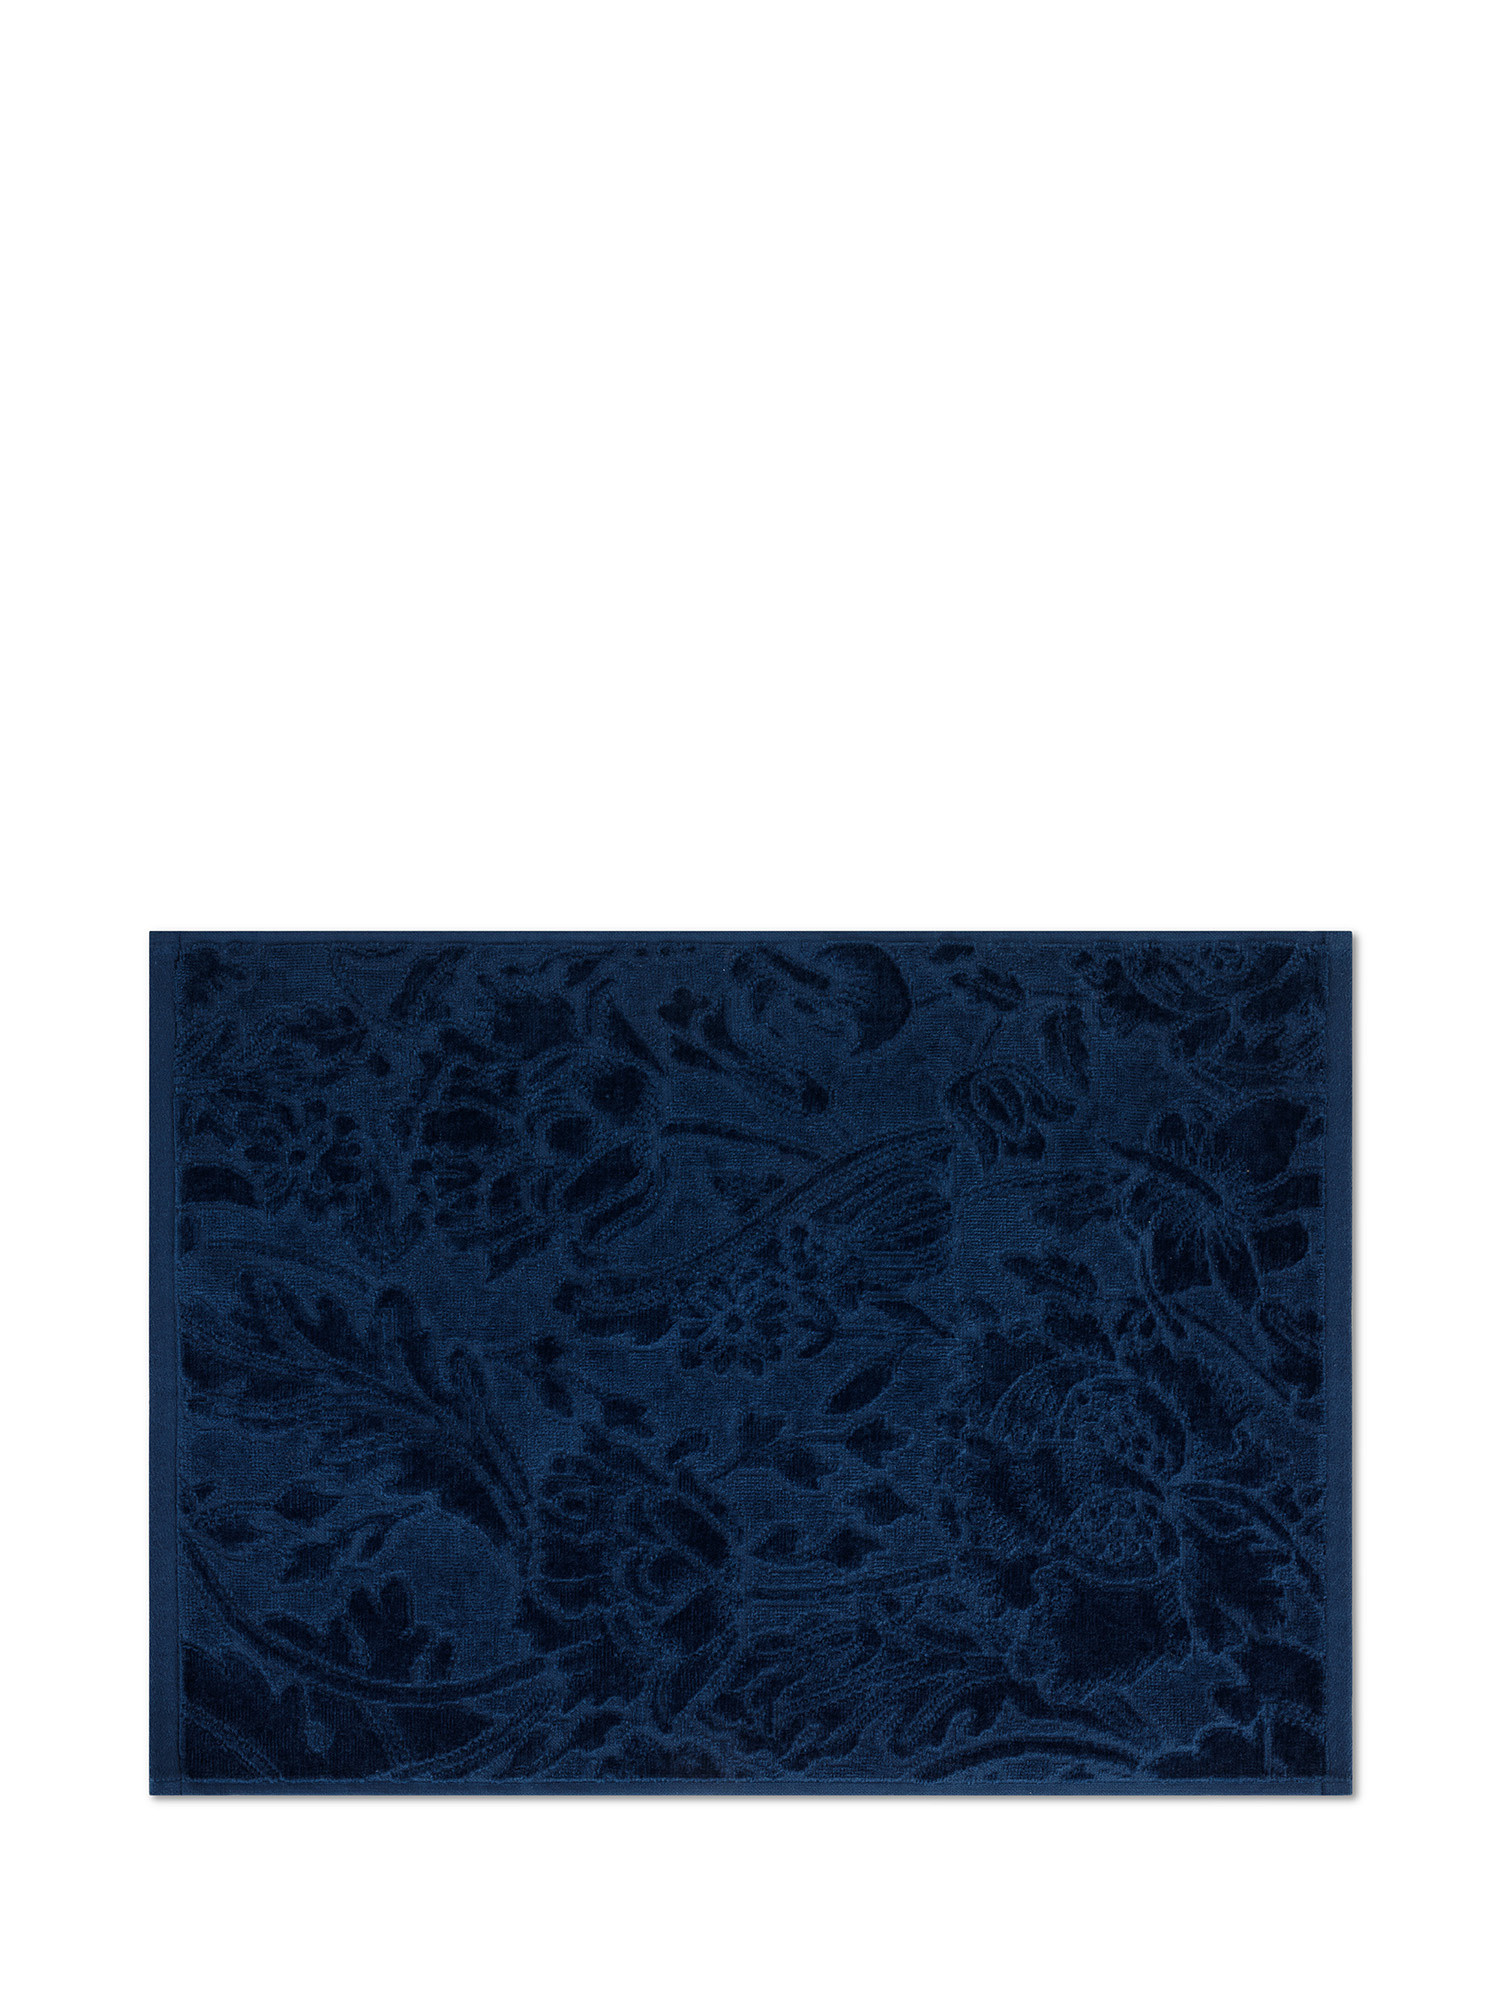 Asciugamano in velour di puro cotone tinta unita con lavorazione fiori, Blu, large image number 1